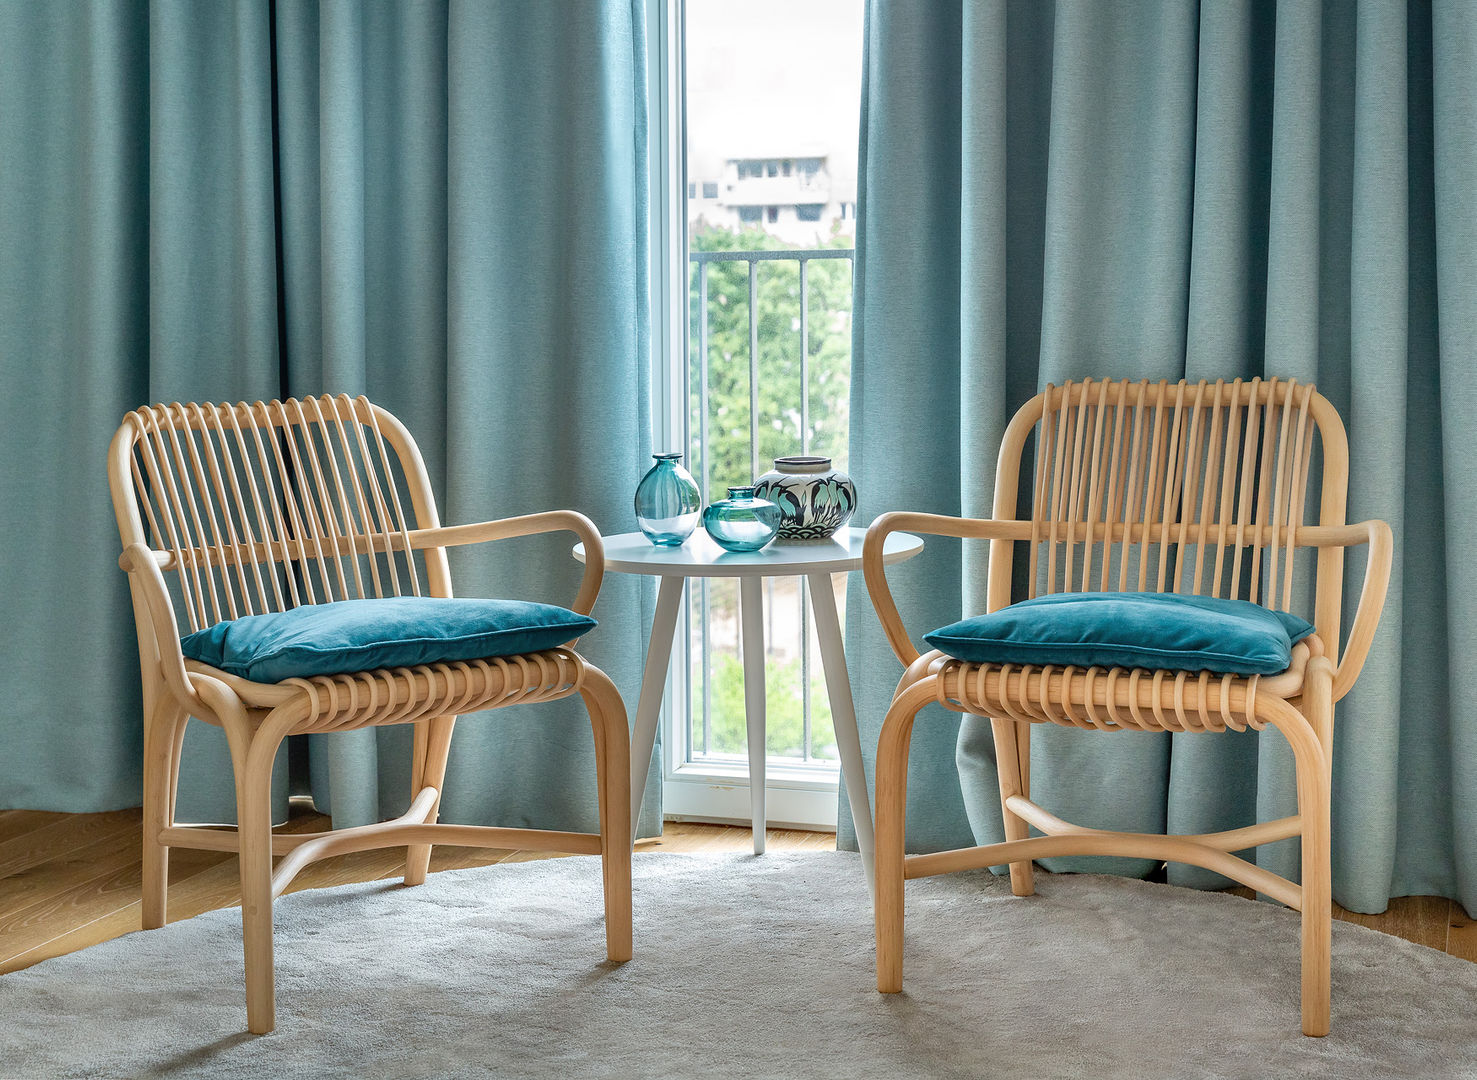 Sitzecke mit zwei Sessel aus Rattan CONSCIOUS DESIGN - Interiors by Nicoletta Zarattini Moderne Wohnzimmer Holz Holznachbildung